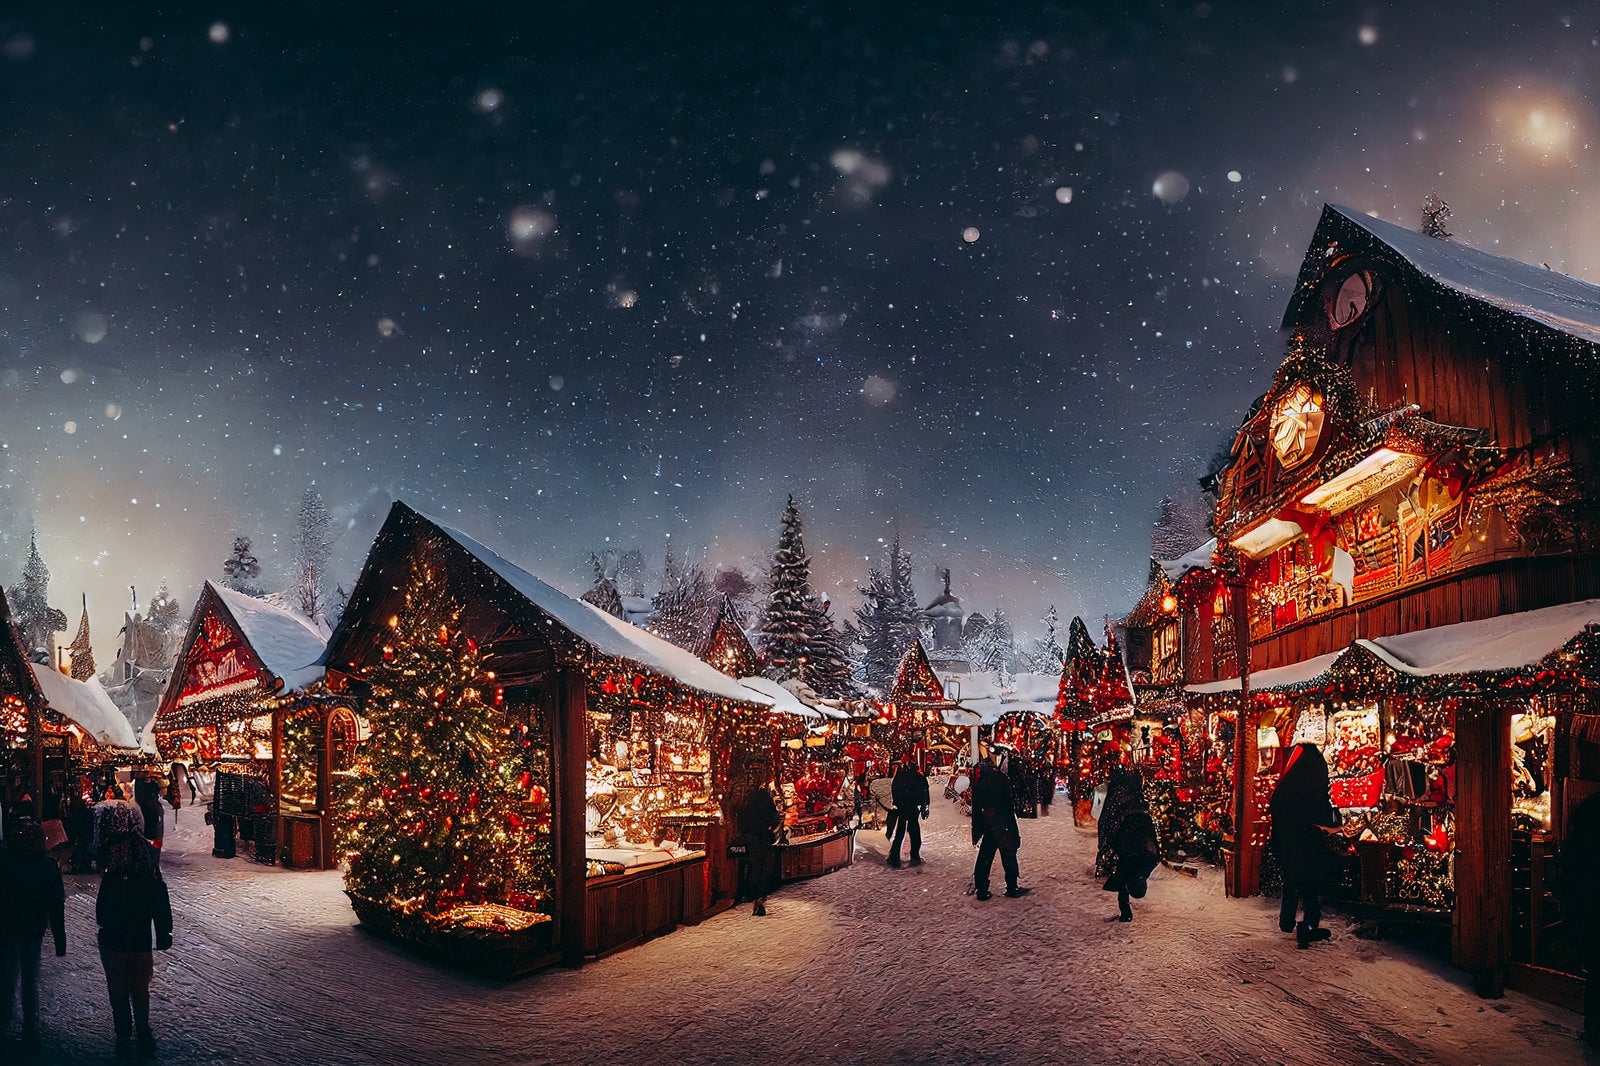 「イルミネーションで彩るクリスマスマーケット」の写真